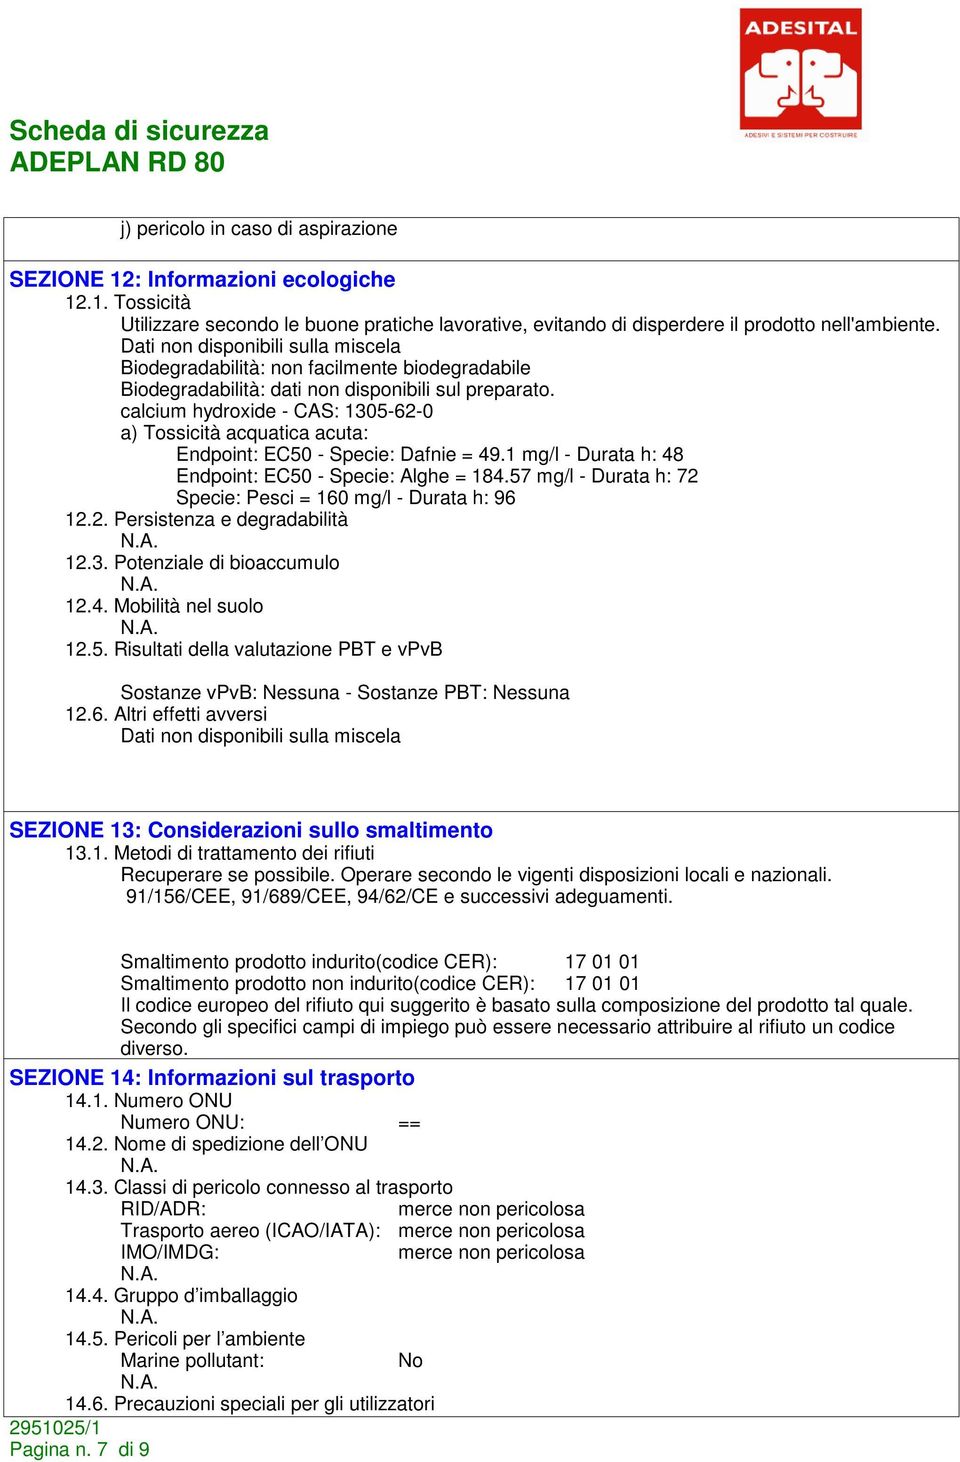 calcium hydroxide - CAS: 1305-62-0 a) Tossicità acquatica acuta: Endpoint: EC50 - Specie: Dafnie = 49.1 mg/l - Durata h: 48 Endpoint: EC50 - Specie: Alghe = 184.